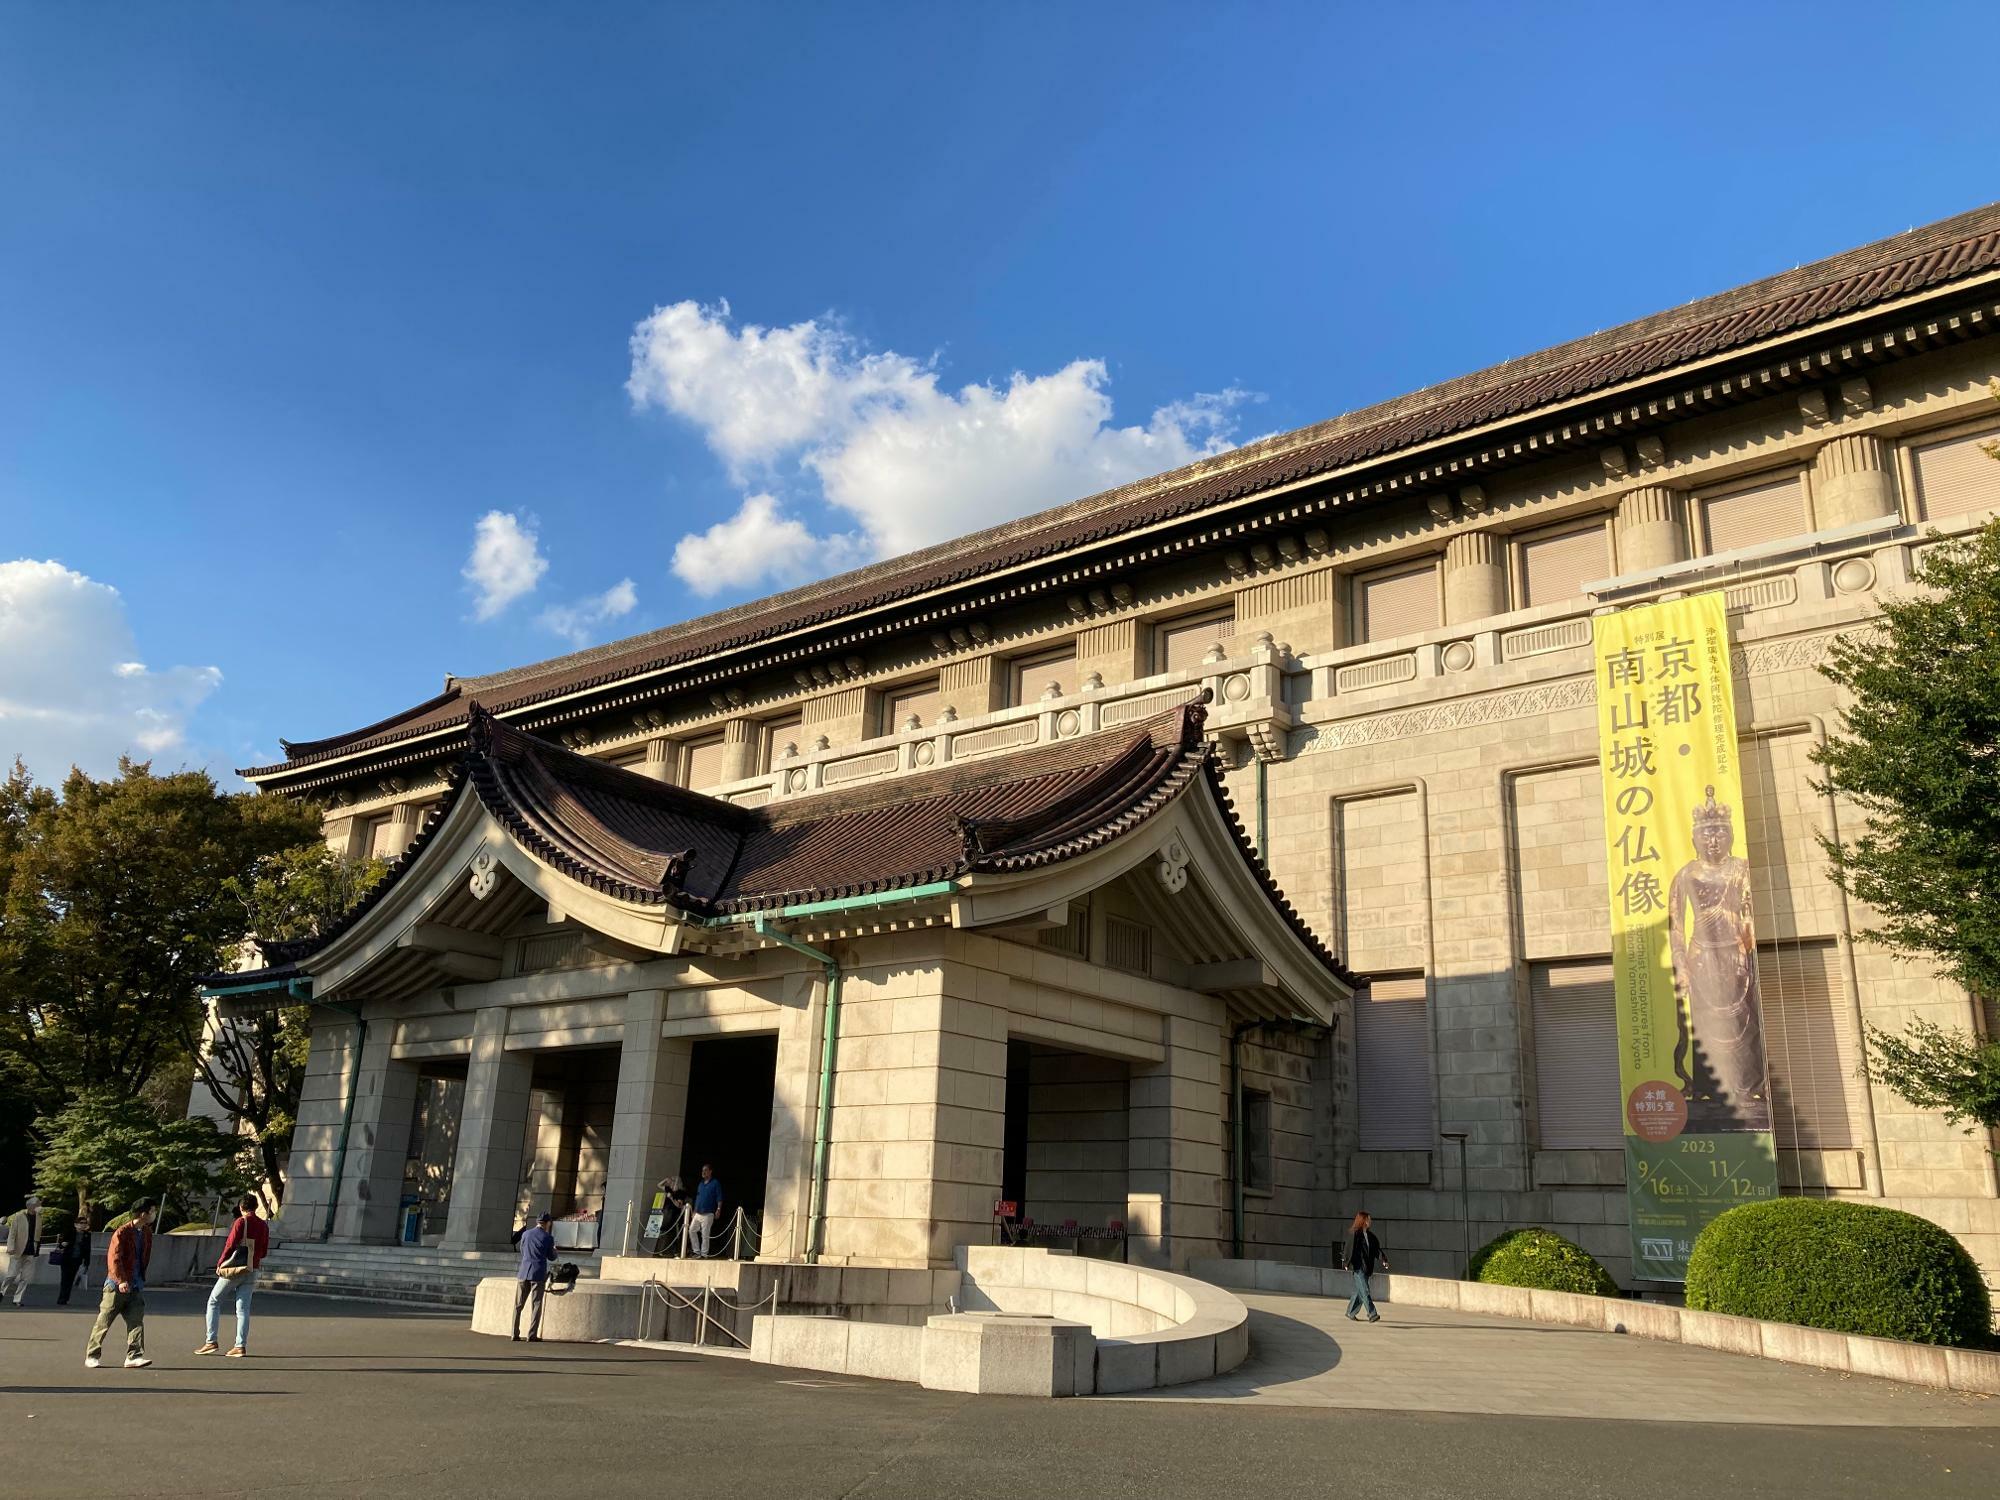 昨年150周年を迎えた日本で最も長い歴史を持つ博物館「東京国立博物館」のどっしりと重厚な本館